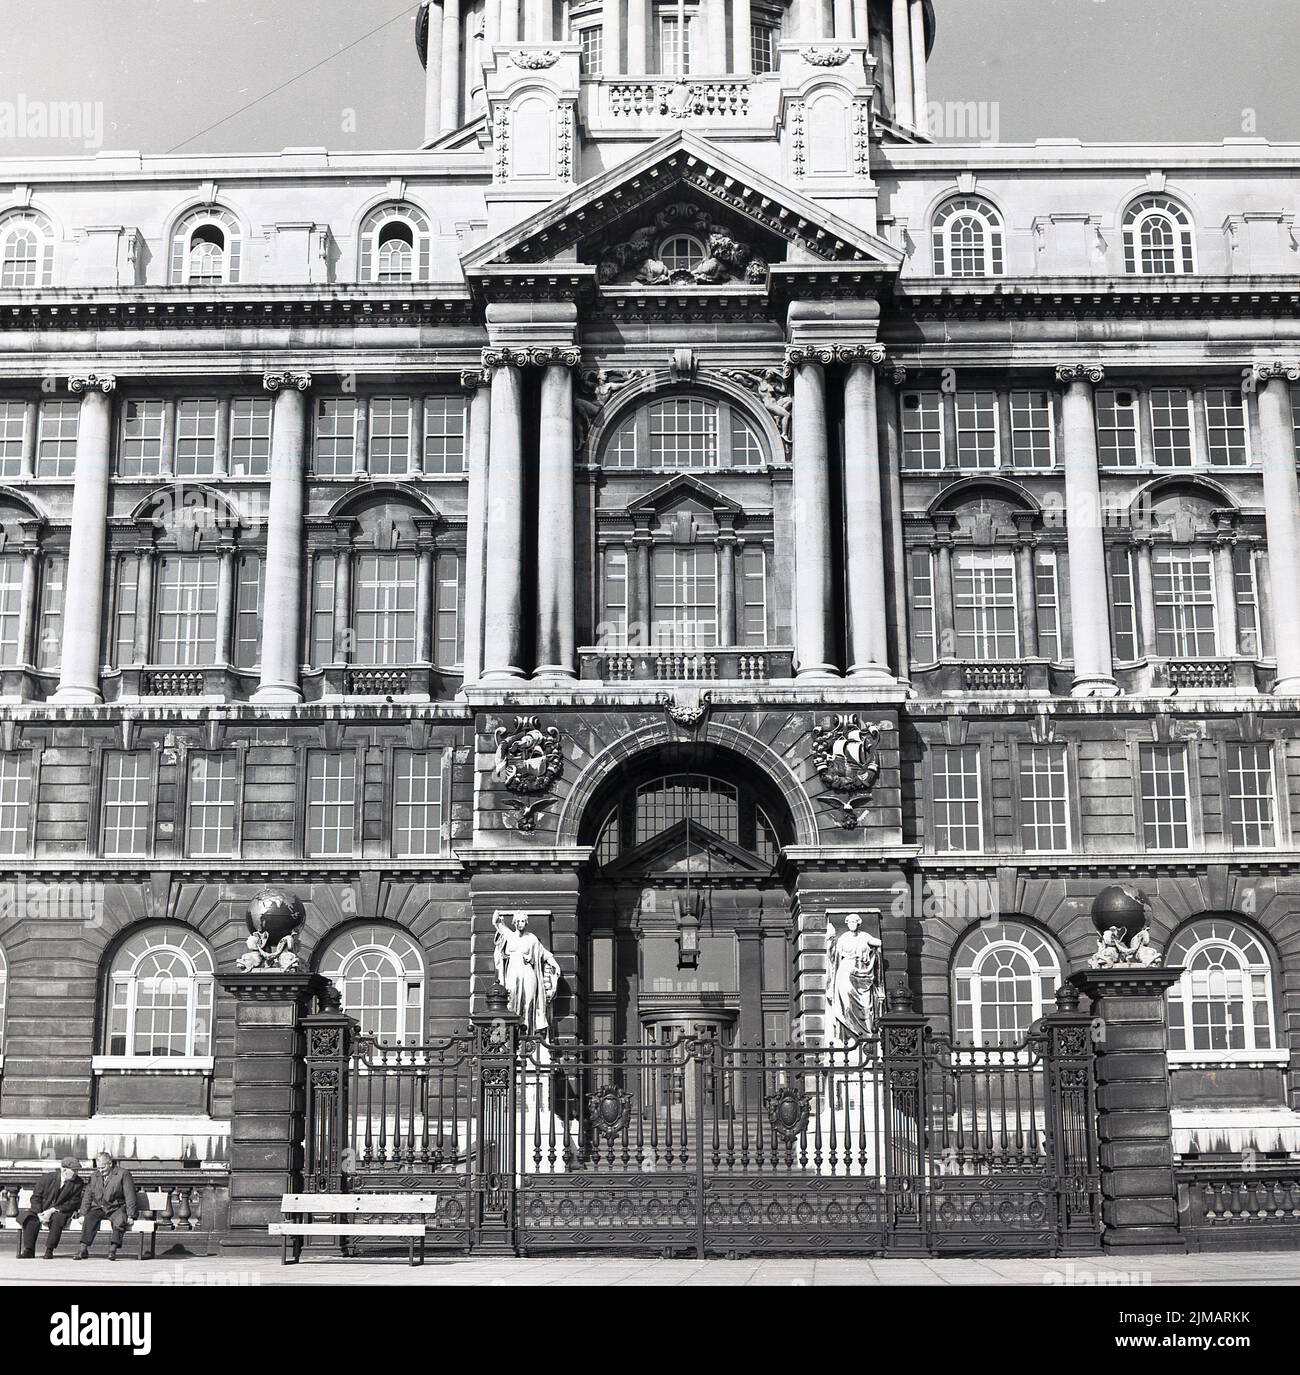 1960s, vue historique et extérieure de l'hôtel de ville de Liverpool, Angleterre, Royaume-Uni, deux hommes assis sur un banc à l'extérieur. Conçu par John Wood, il a été construit en 1749 et est un exemple classique de l'architecture géorgienne. Banque D'Images